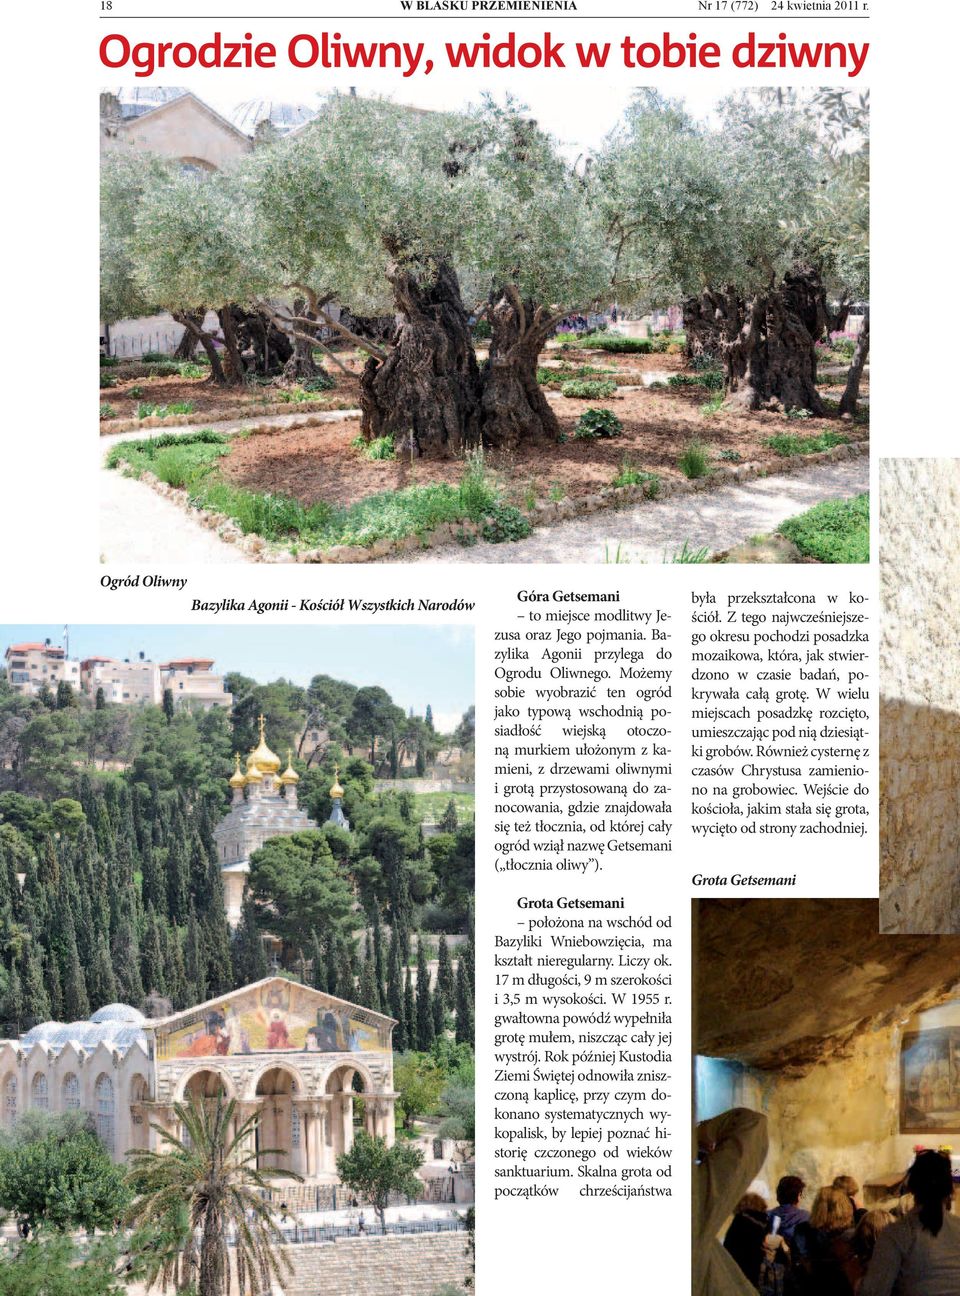 Możemy sobie wyobrazić ten ogród jako typową wschodnią posiadłość wiejską otoczoną murkiem ułożonym z kamieni, z drzewami oliwnymi i grotą przystosowaną do zanocowania, gdzie znajdowała się też